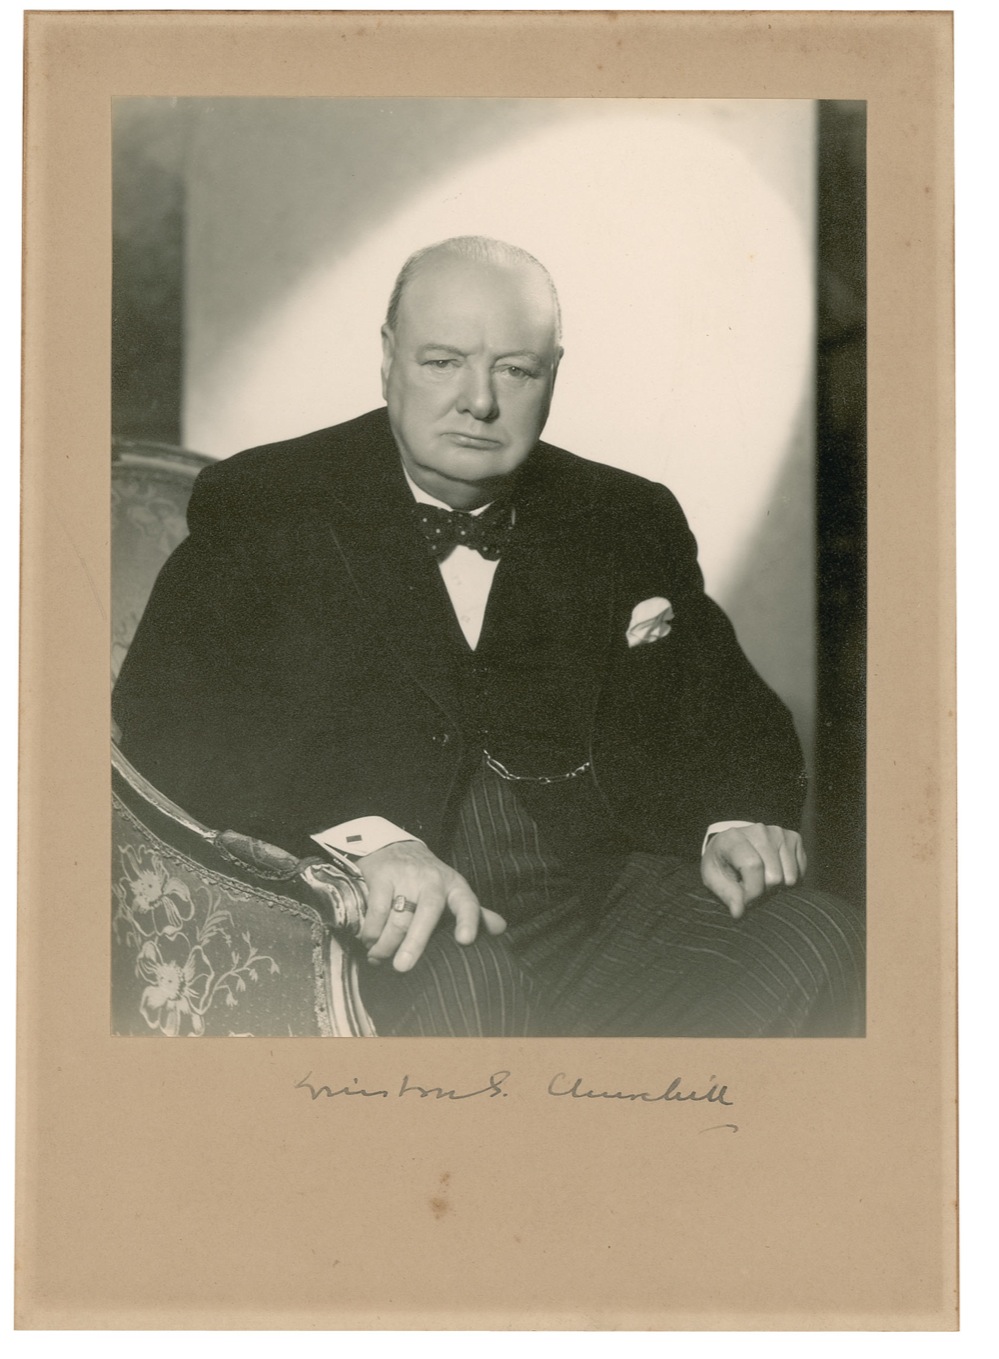 Lot #163 Winston Churchill